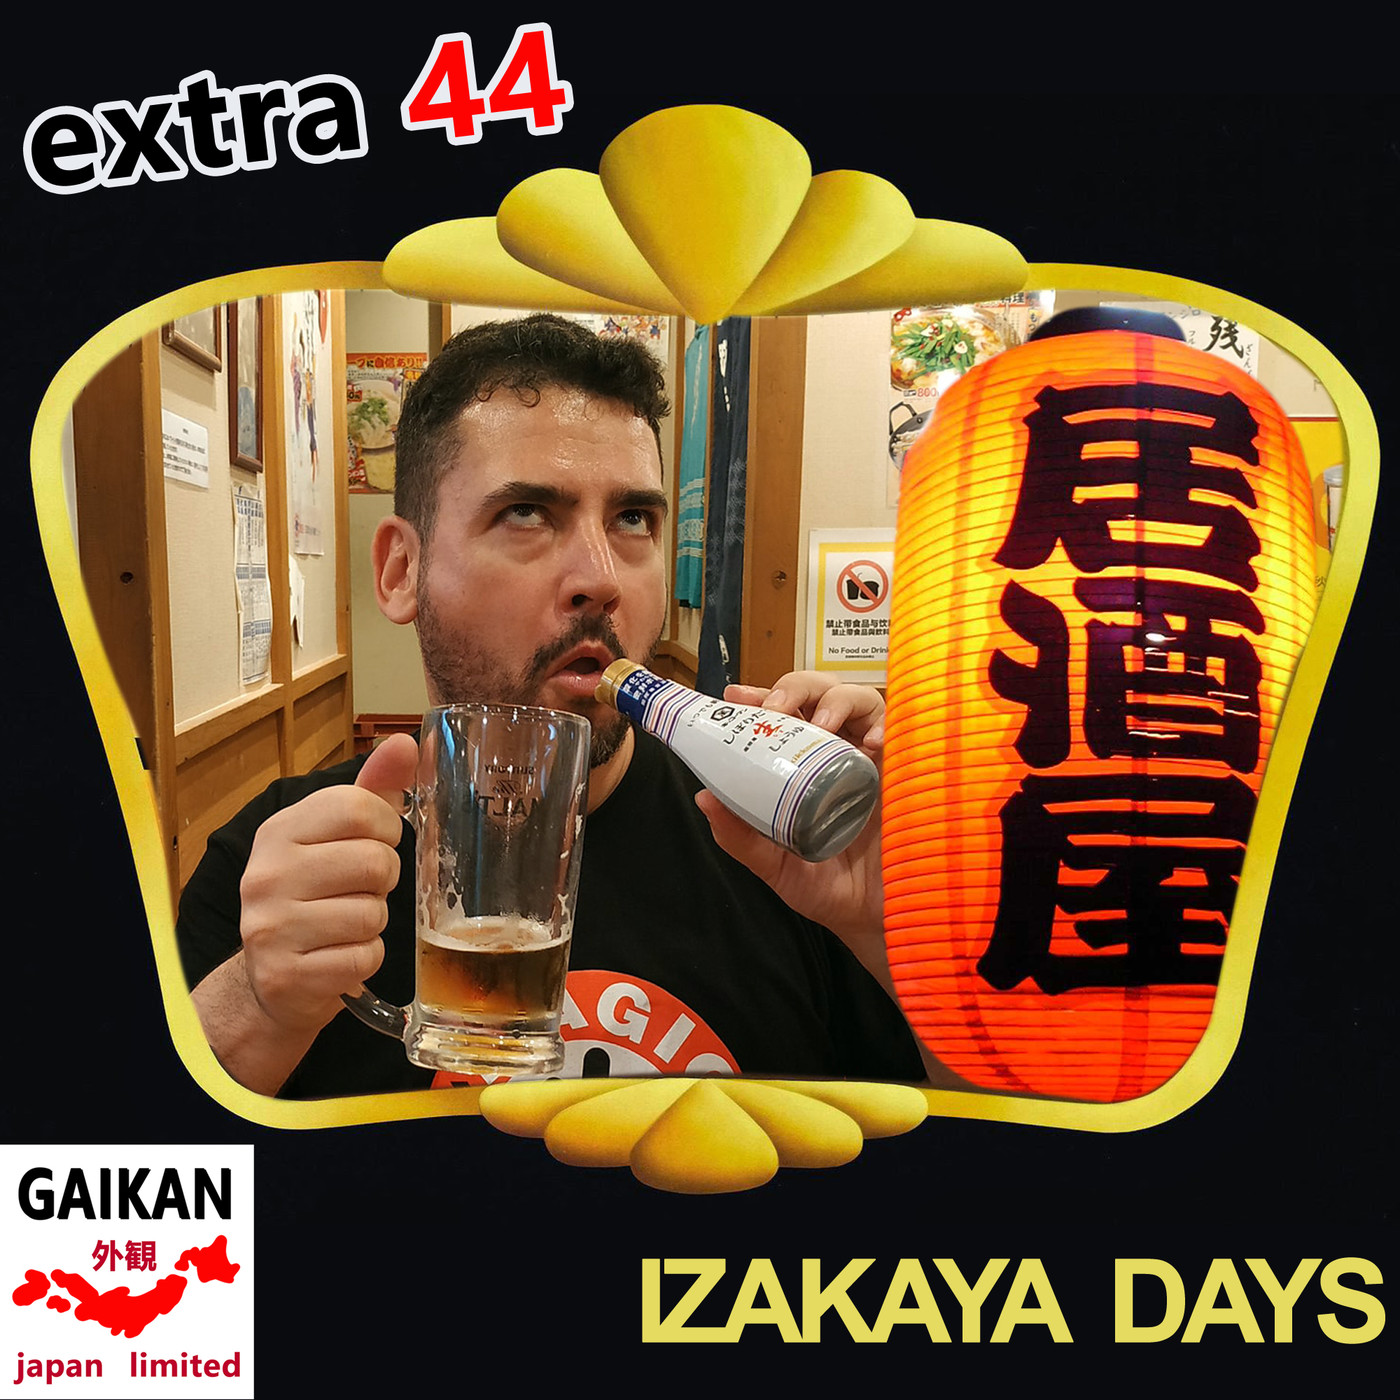 Extra 44 - Izakaya Days (居酒屋) - Hablando de estas tabernas japonesas y recordando varias visitas - Episodio exclusivo para mecenas